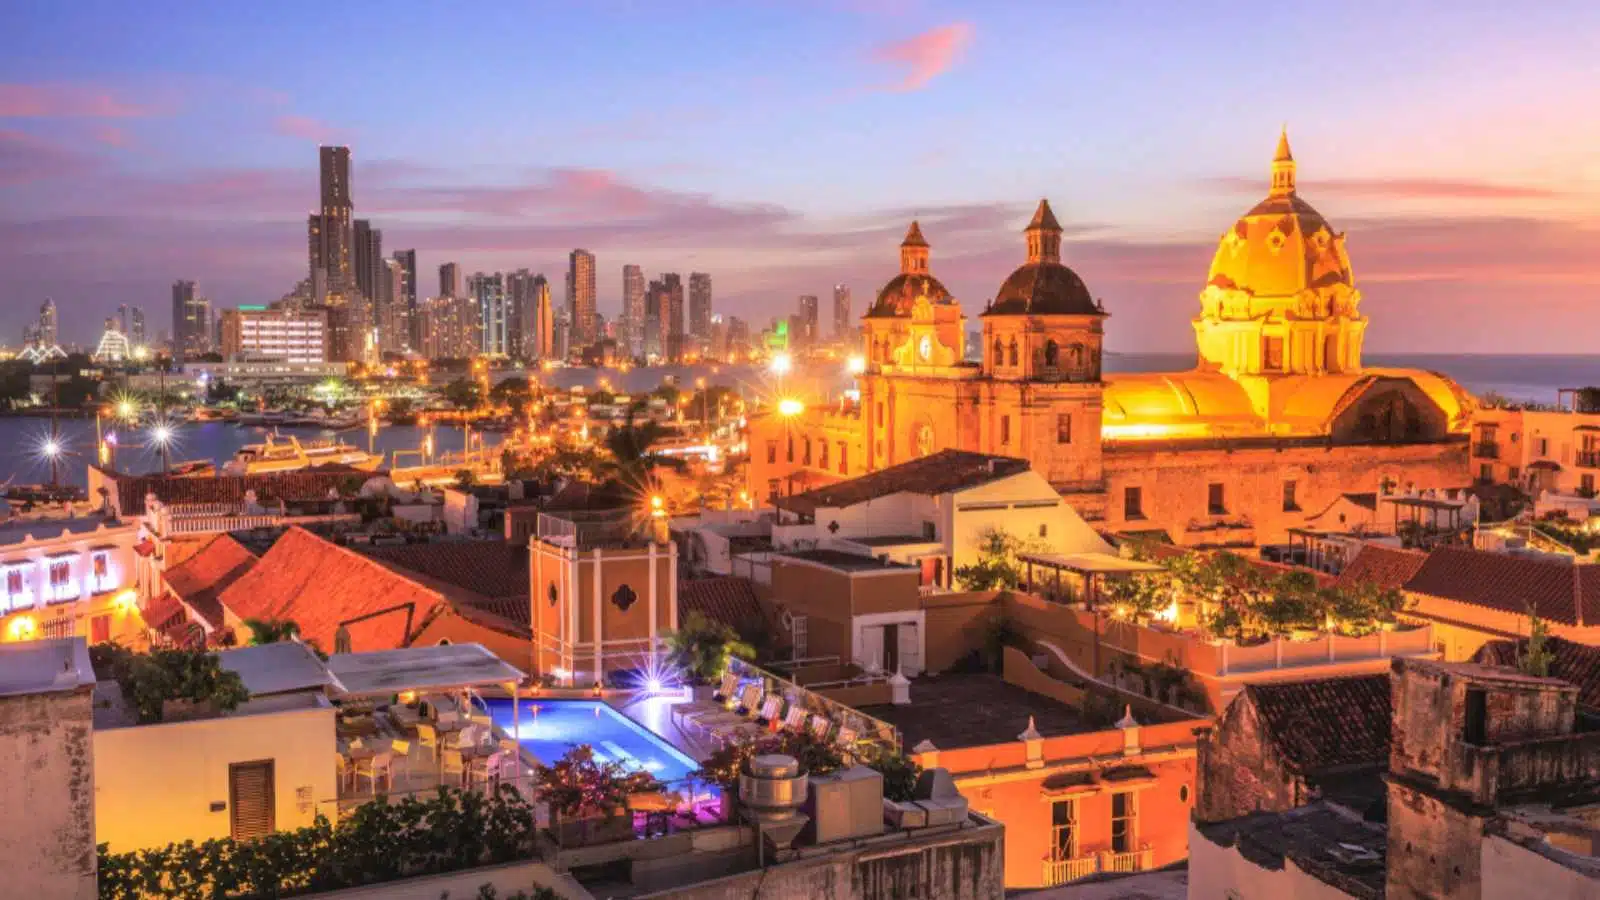 Night View of Cartagena de Indias, Colombia